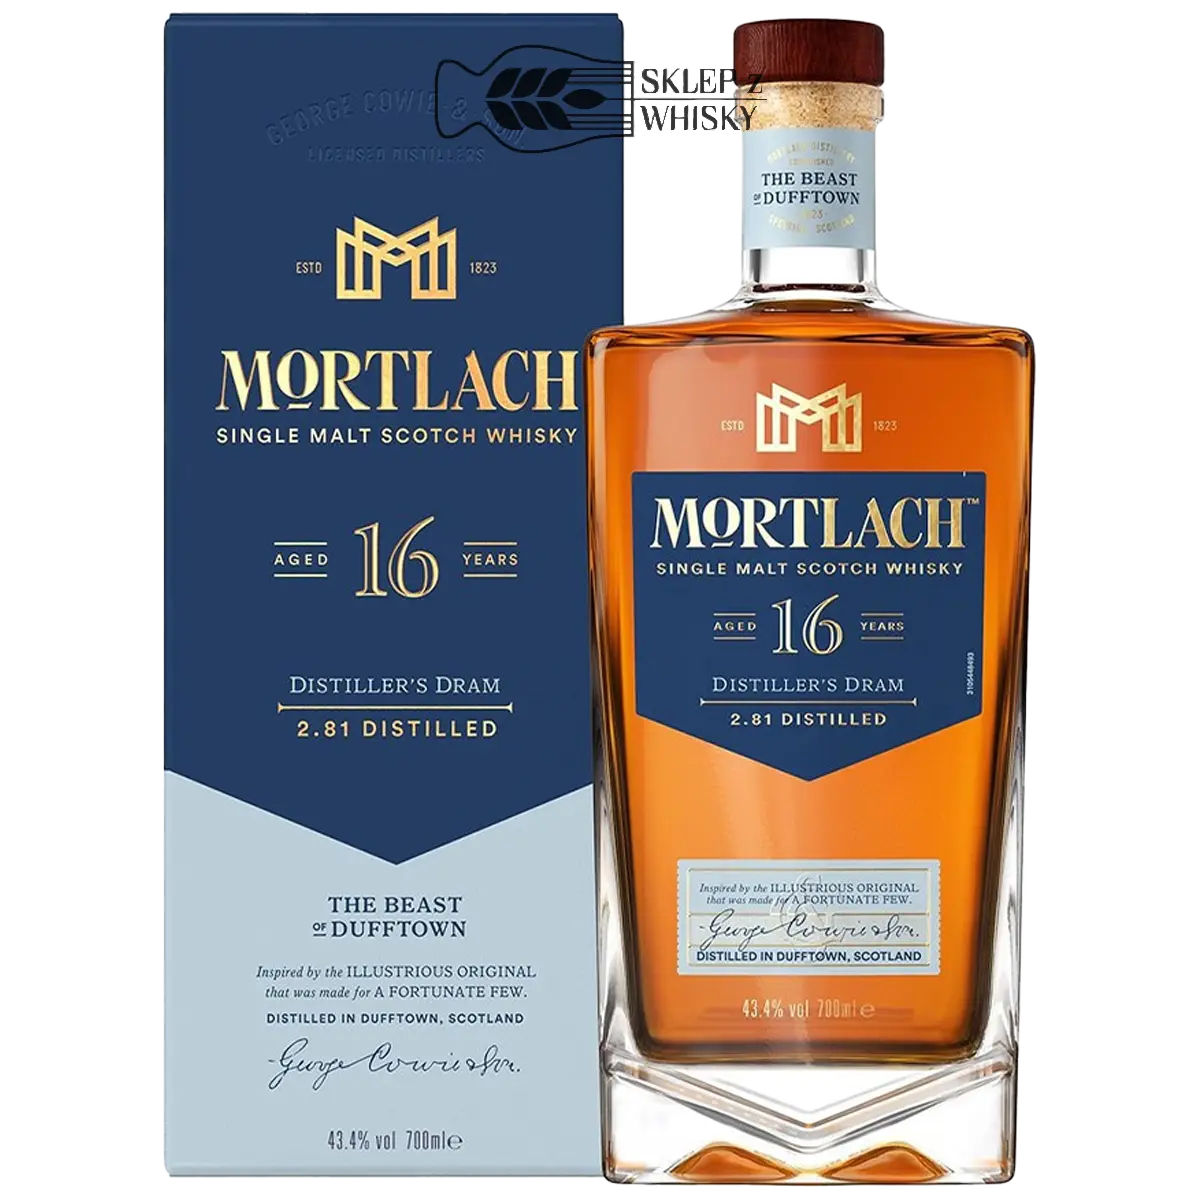 Mortlach 16 YO Distiller's Dram - szkocka whisky single malt z regionu Speyside, 700 ml, w pudełku